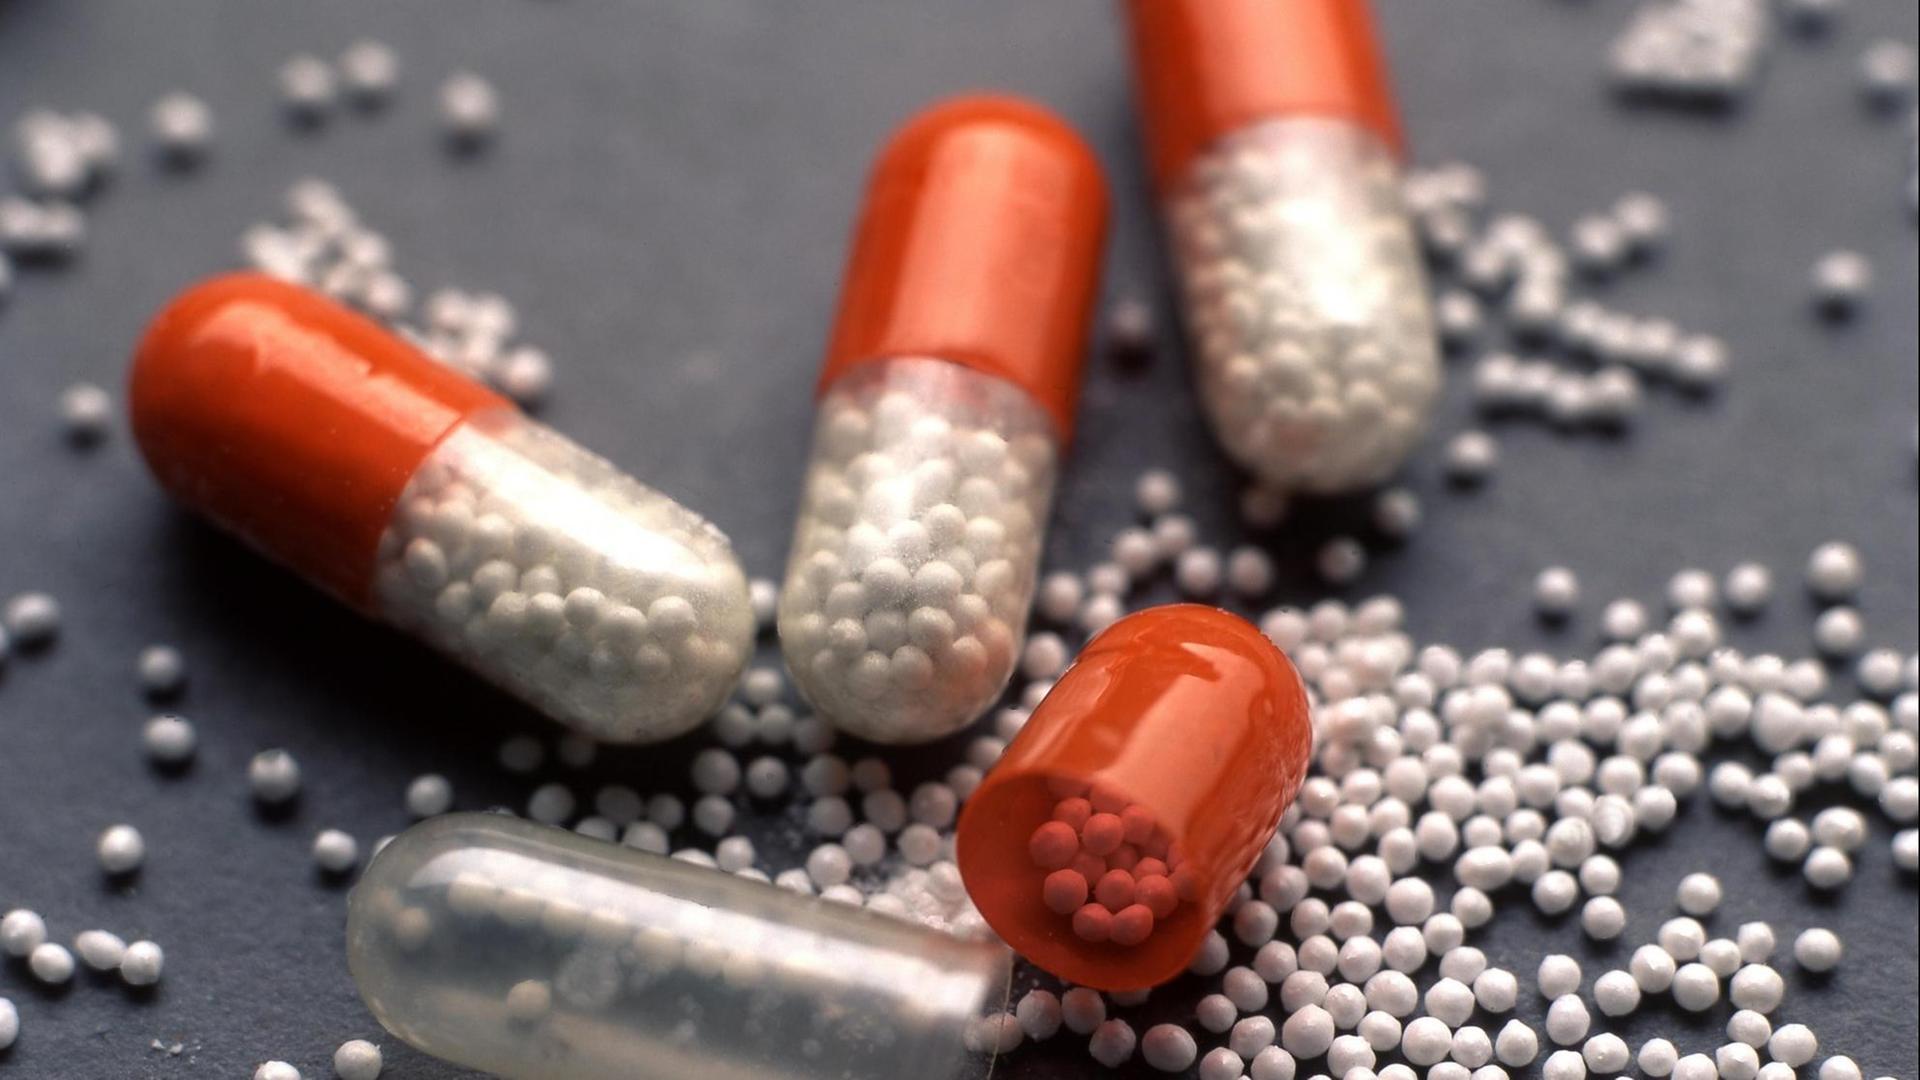 Das Foto zeigt mehrere Kapseln, die jeweils viele kleine Pillen beinhalten.